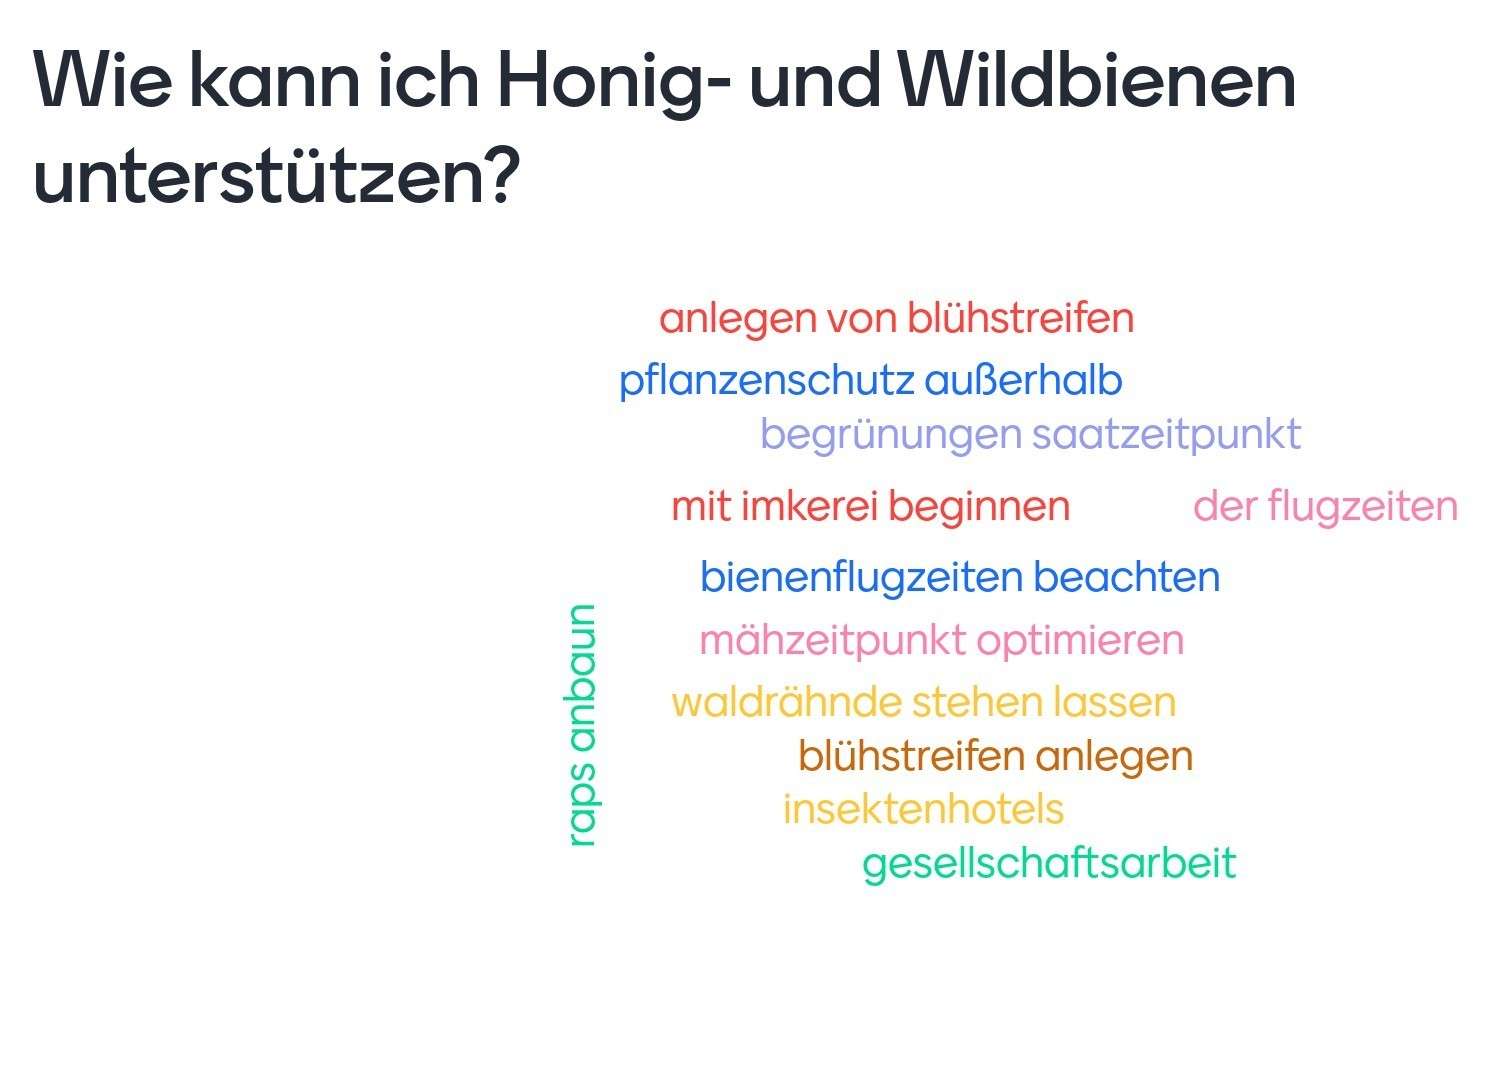 Ergebnisse einer Umfrage im Meisterkurs zum Thema- Wie kann ich Honig- und Wildbienen unterstützen- .jpg